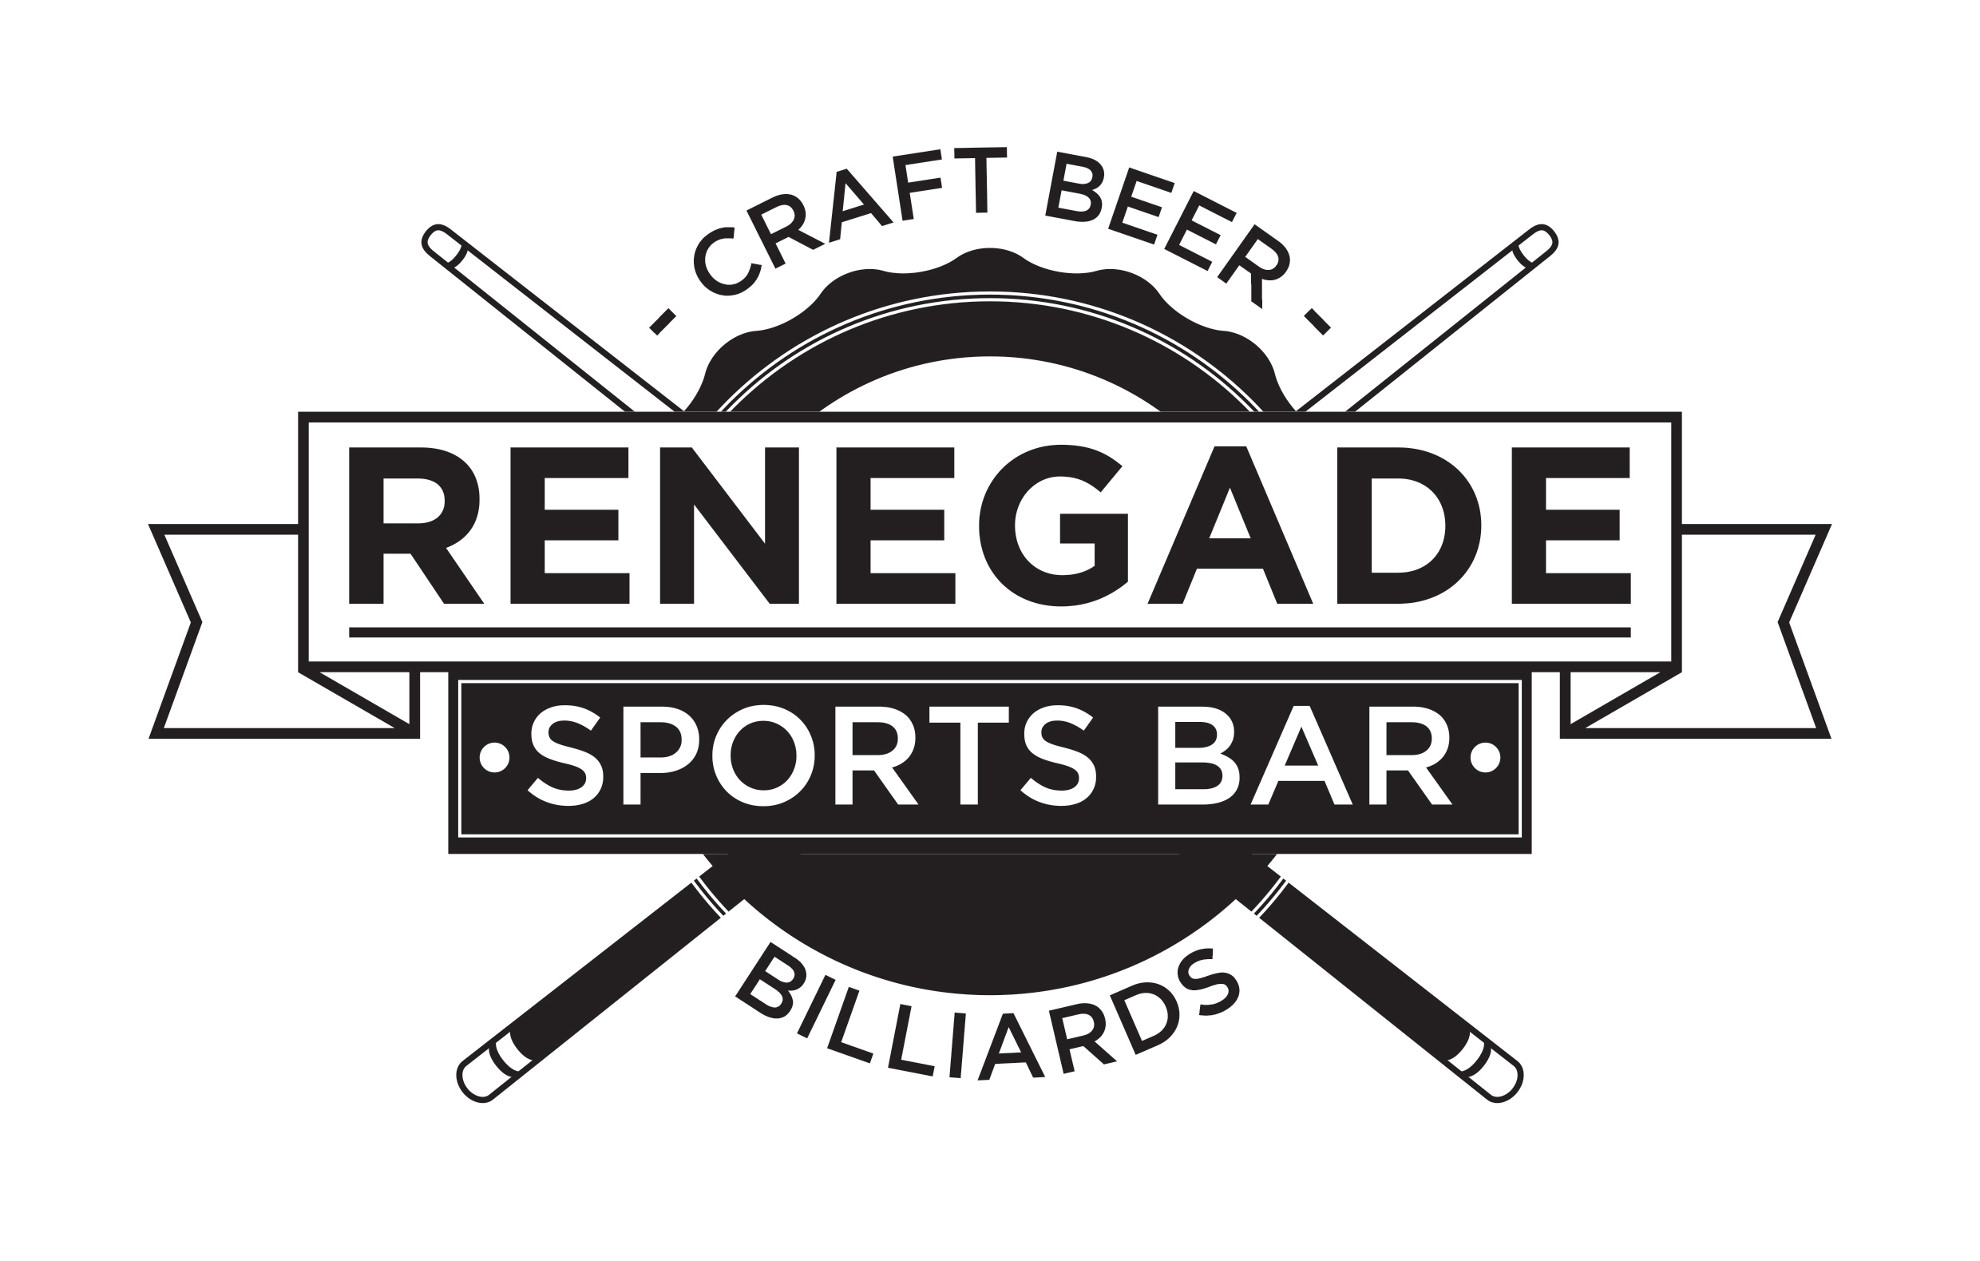 Renegade Craft Beer & Billiards